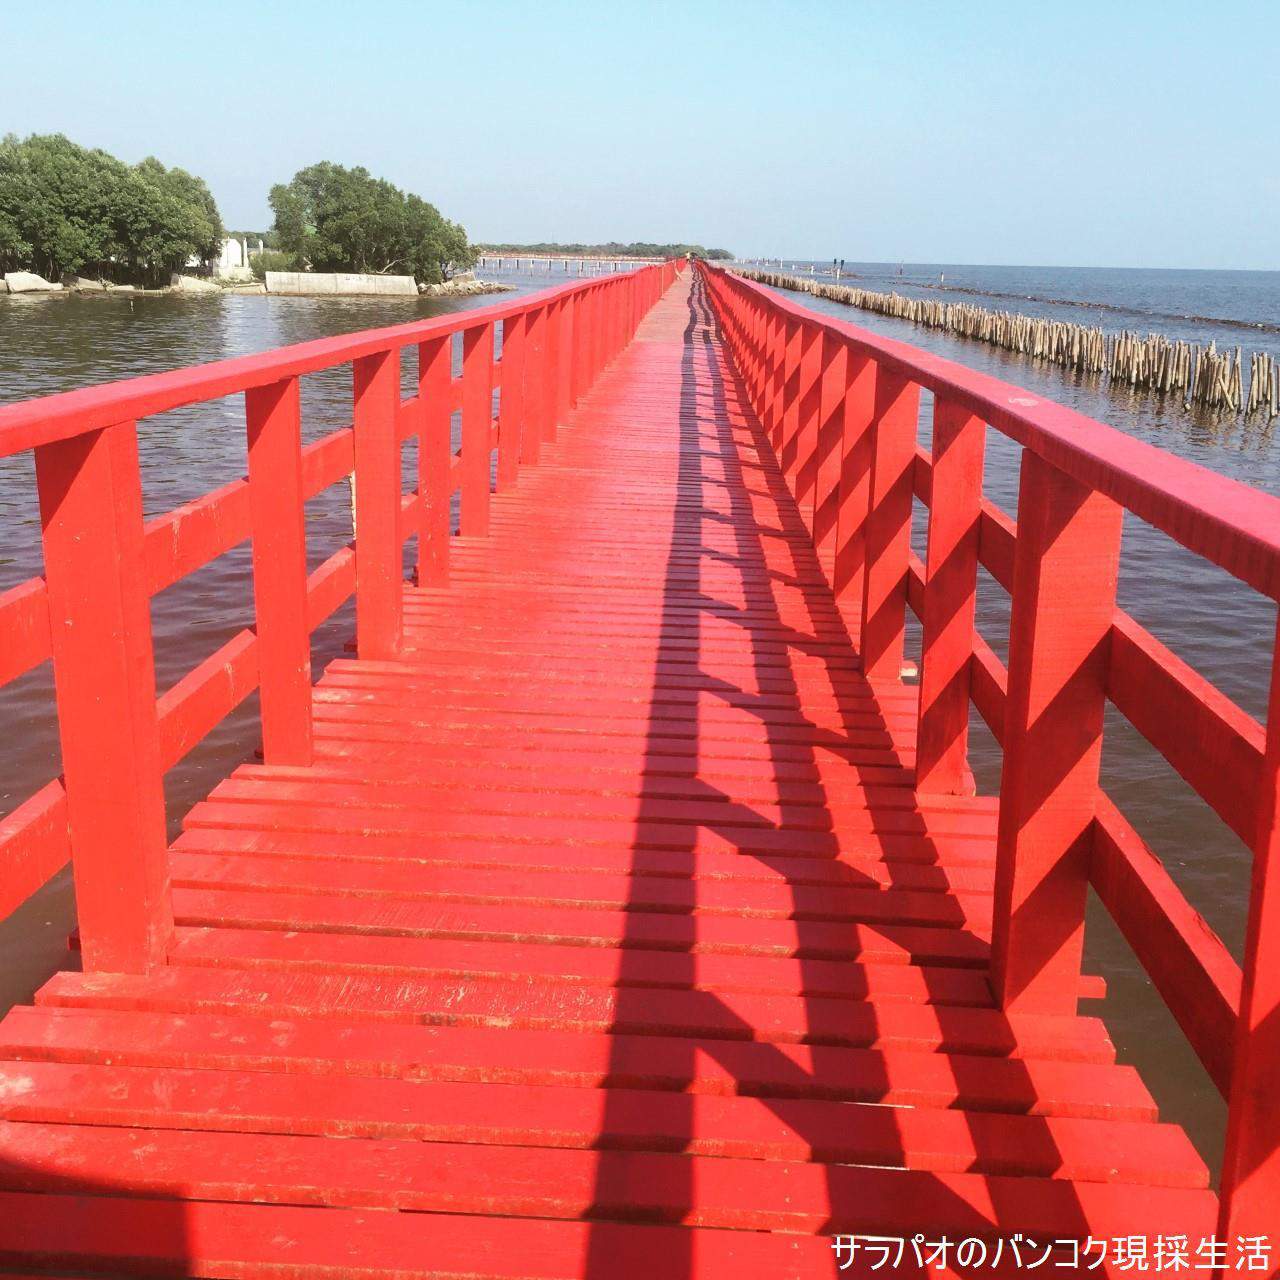 海岸沿いに架かる全長1kmの真っ赤な橋＠サムットサーコーン県